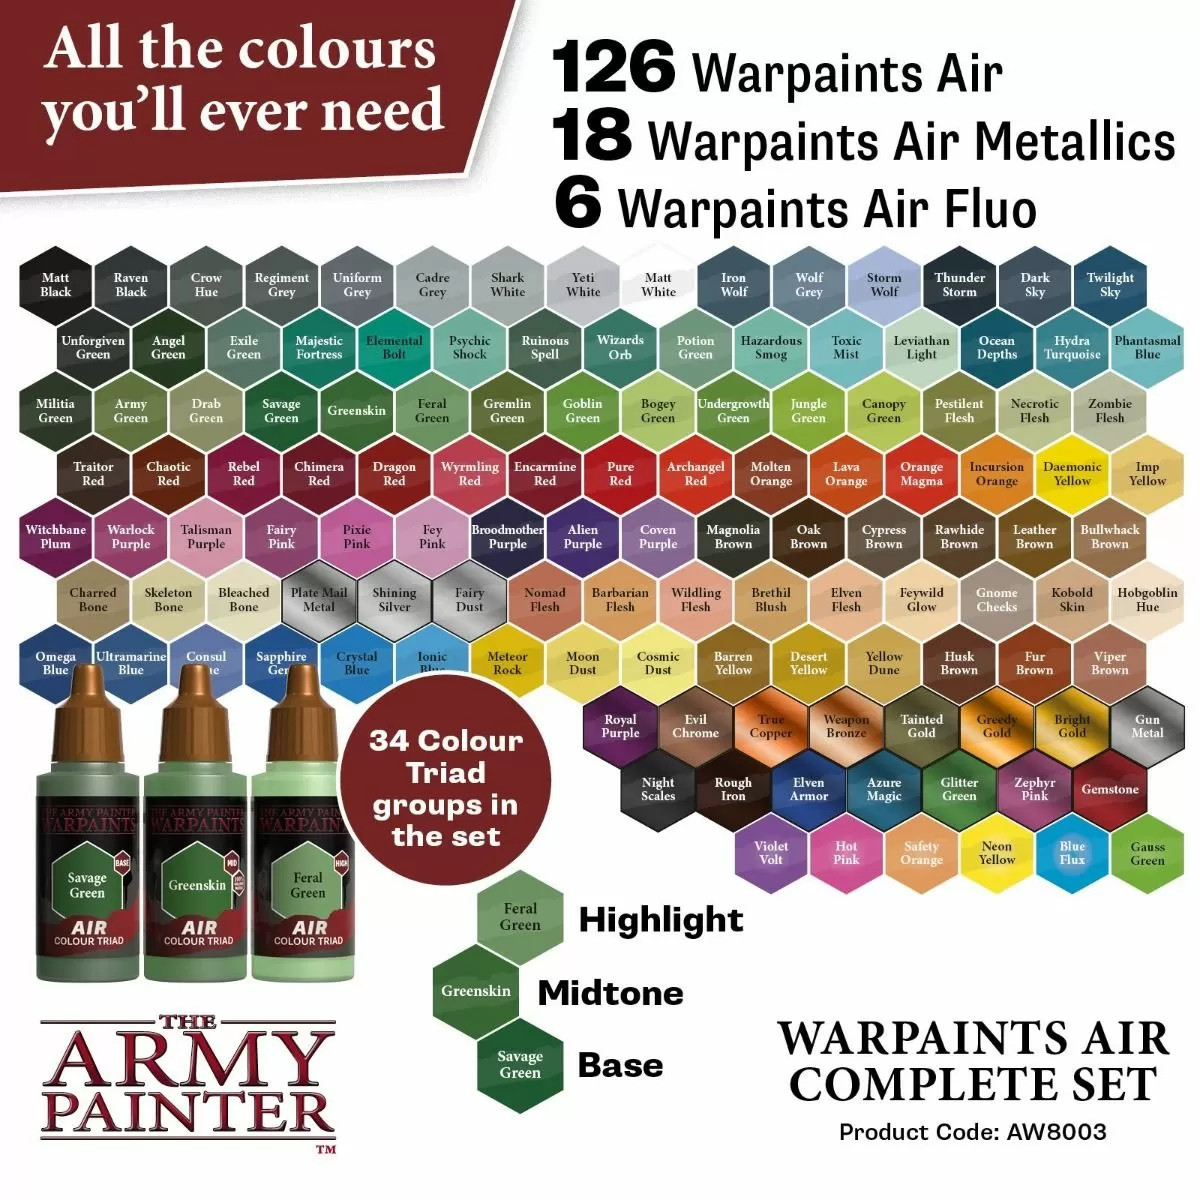 The Army Painter - Mega Paint Set Complete Upgrade Miniature Paint Set -  Acrylic Model Paints for Plastic Models and Miniatures, 74 Acrylic  Warpaints